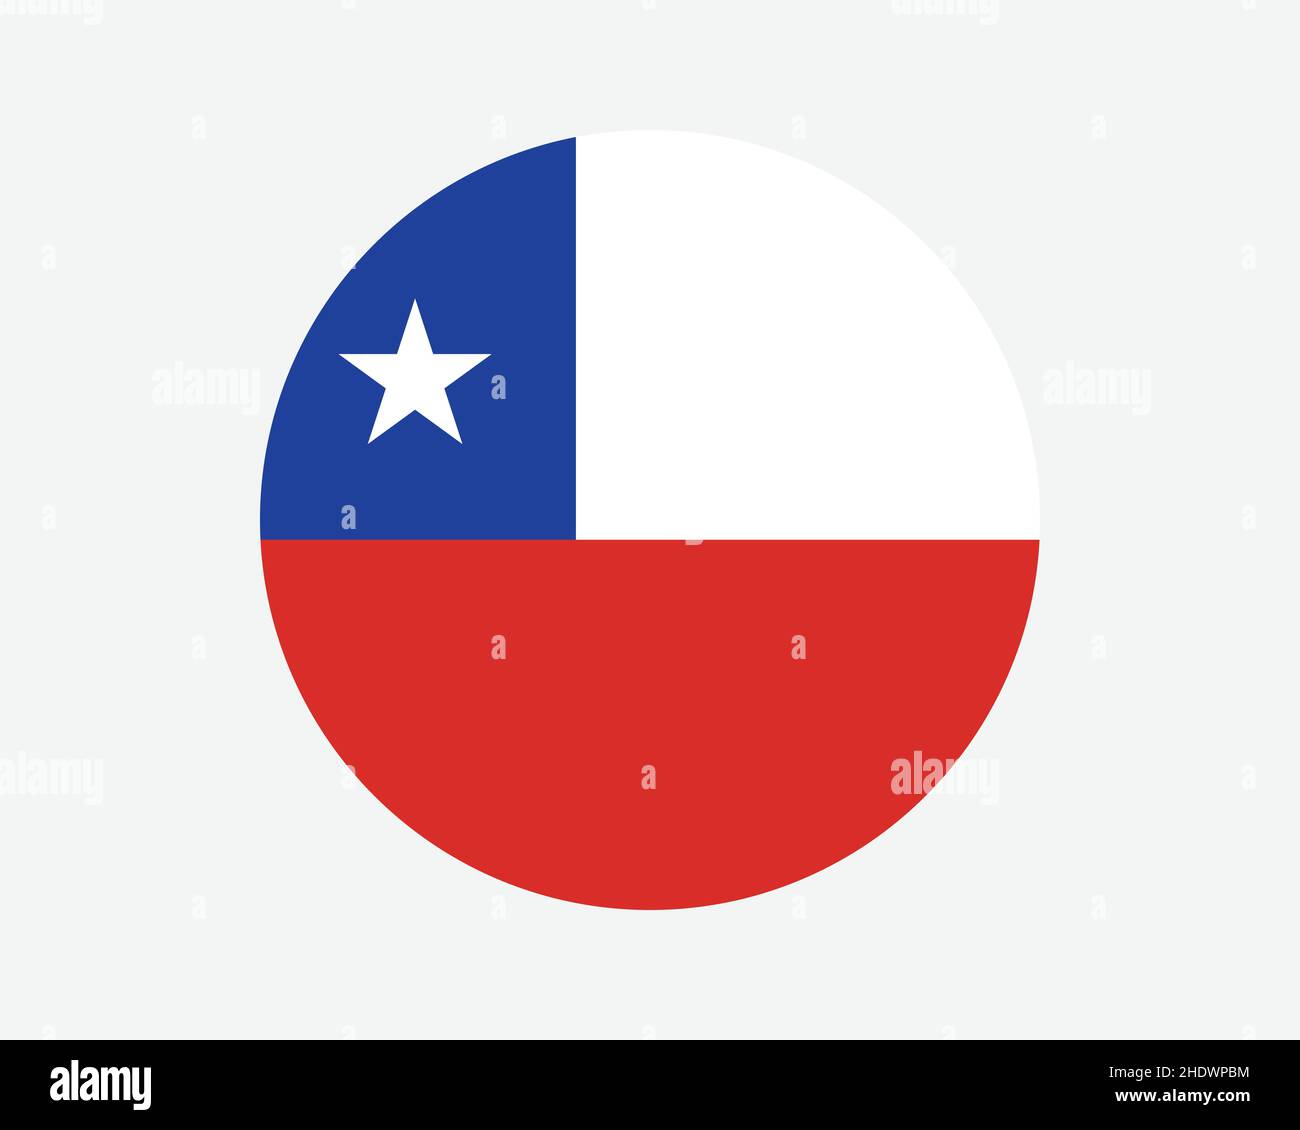 Chile Round Country Flagge. Kreisförmige Chilenische Nationalflagge. Banner mit kreisförmiger Schaltfläche in der Republik Chile. EPS-Vektorgrafik. Stock Vektor